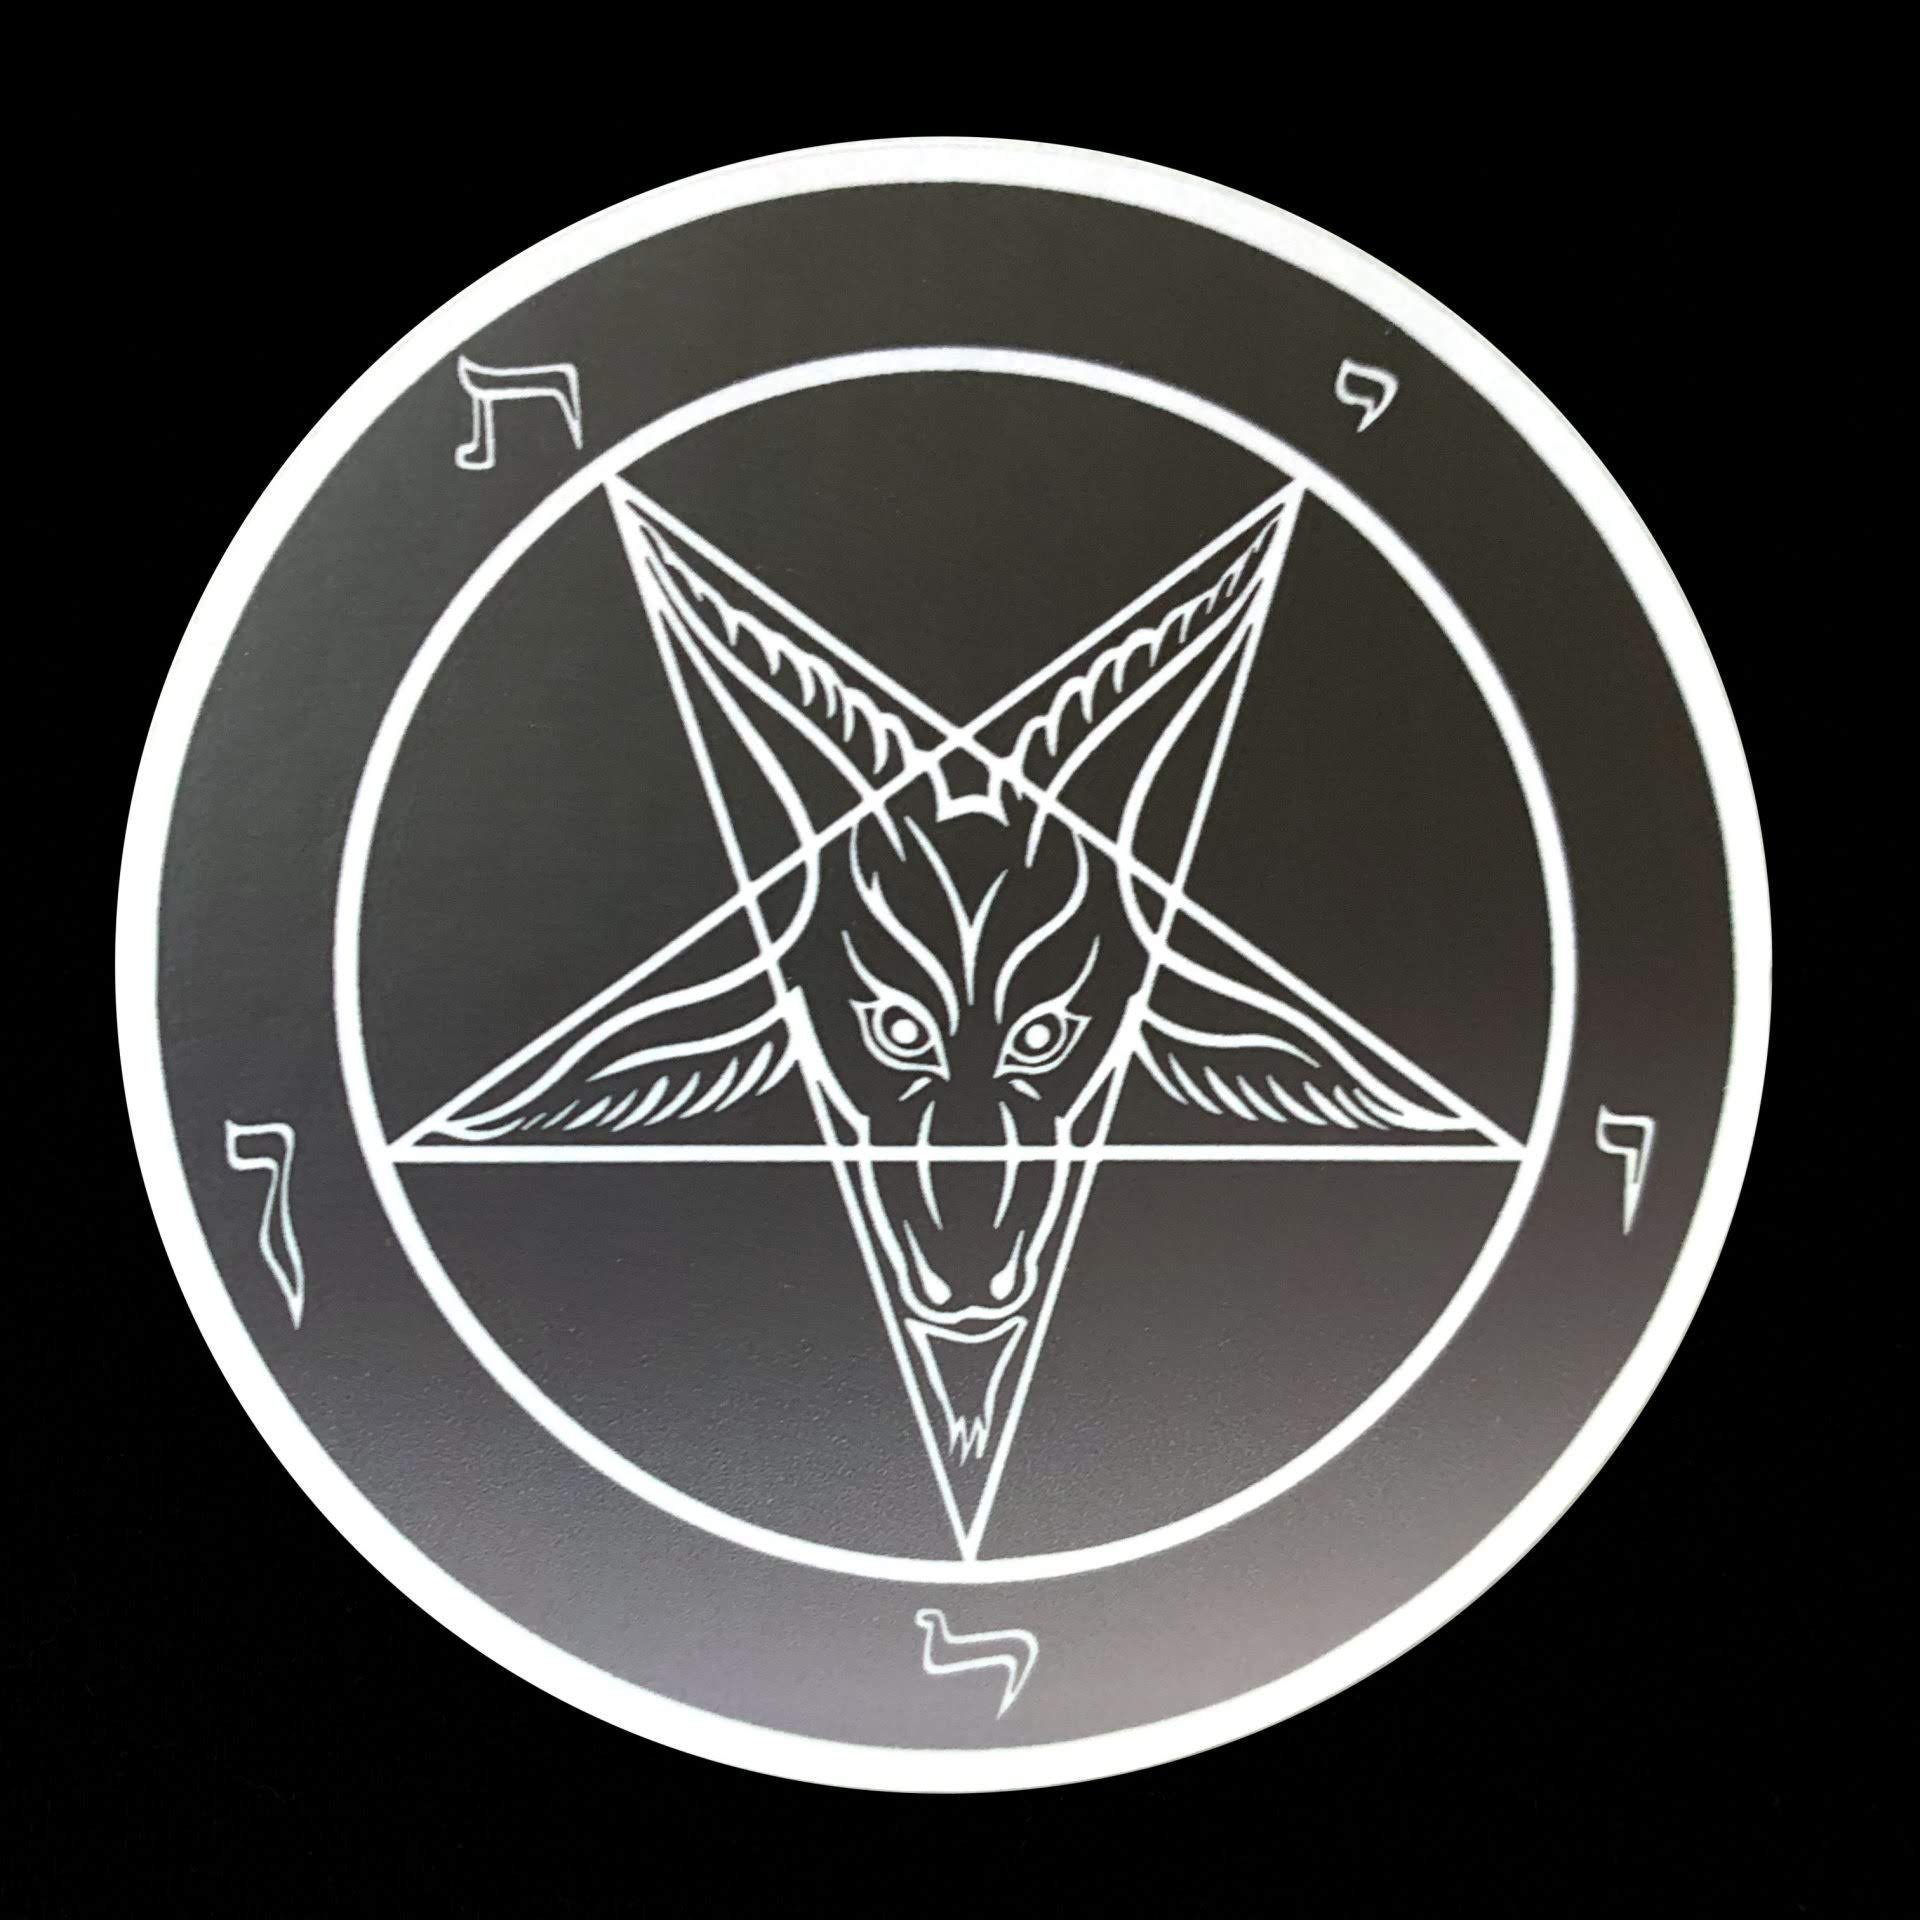 Сатанинская пентаграмма Самаэль